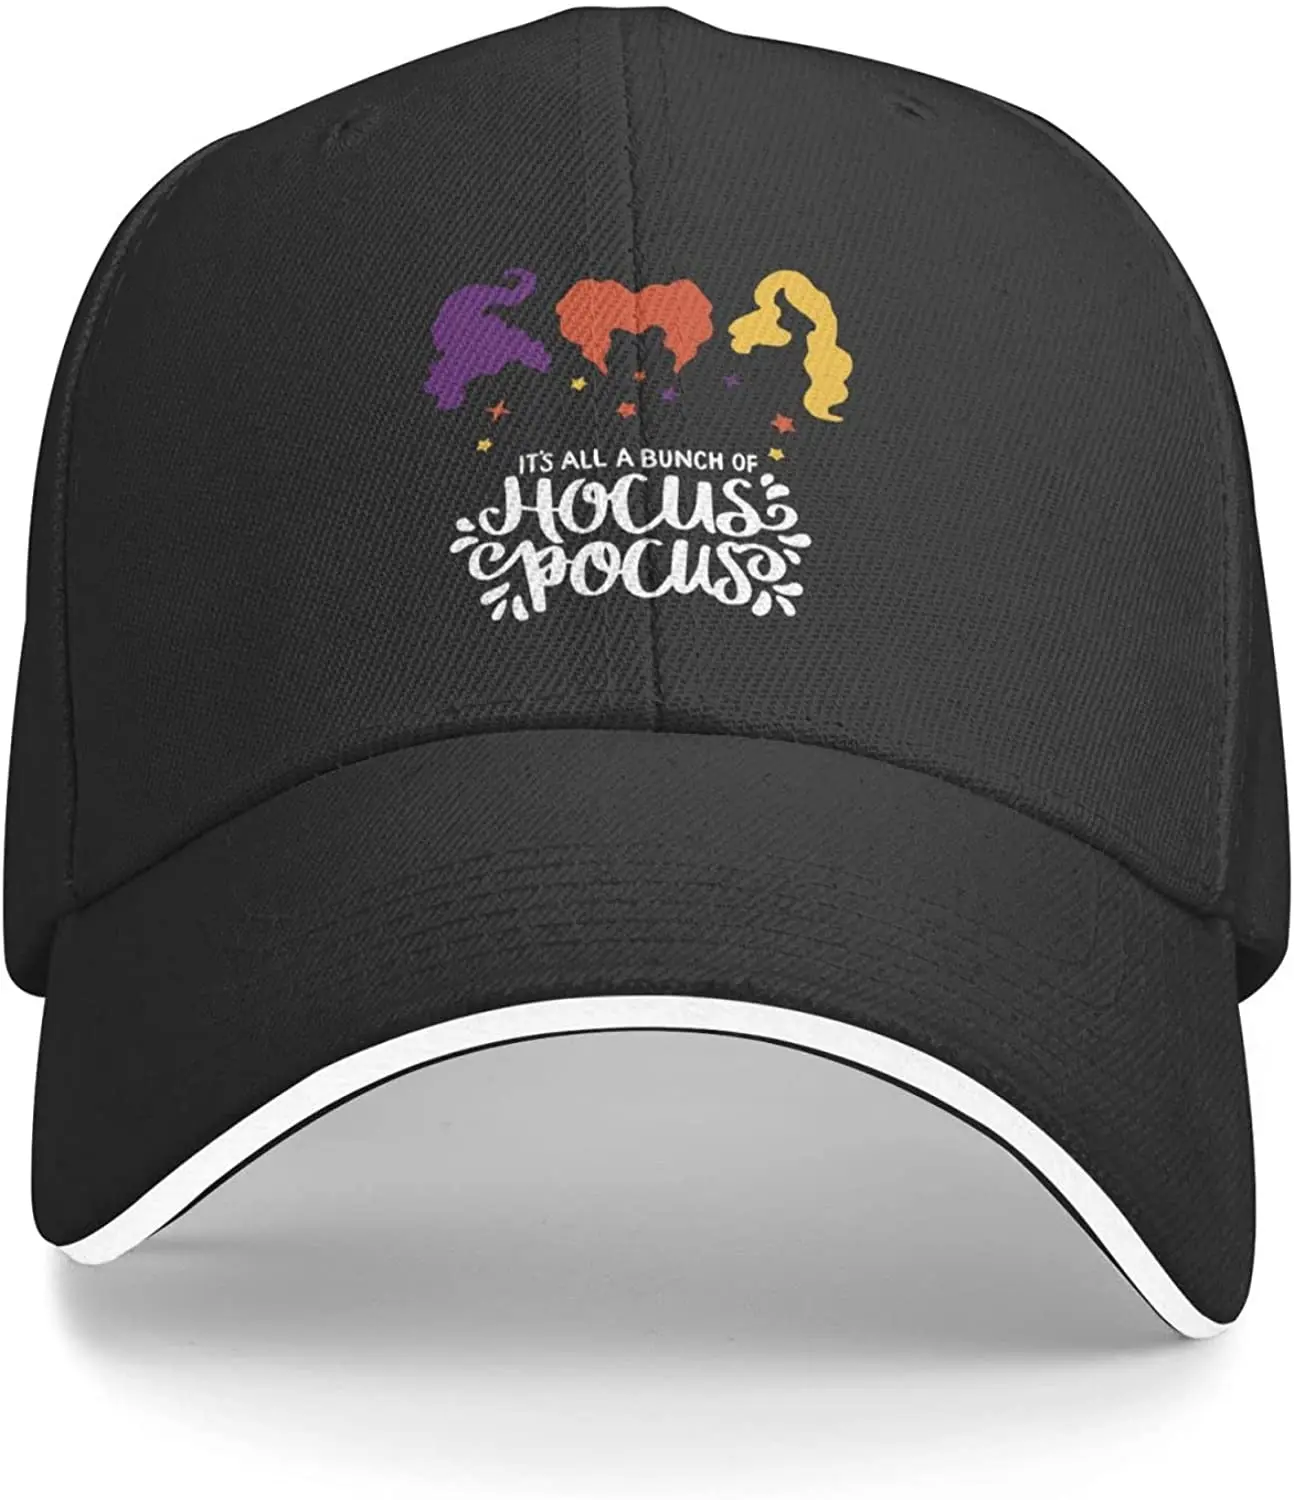 

Бейсболка Hocus Pocus, повседневная шапка унисекс на Хэллоуин, головной убор с изогнутыми полями и принтом